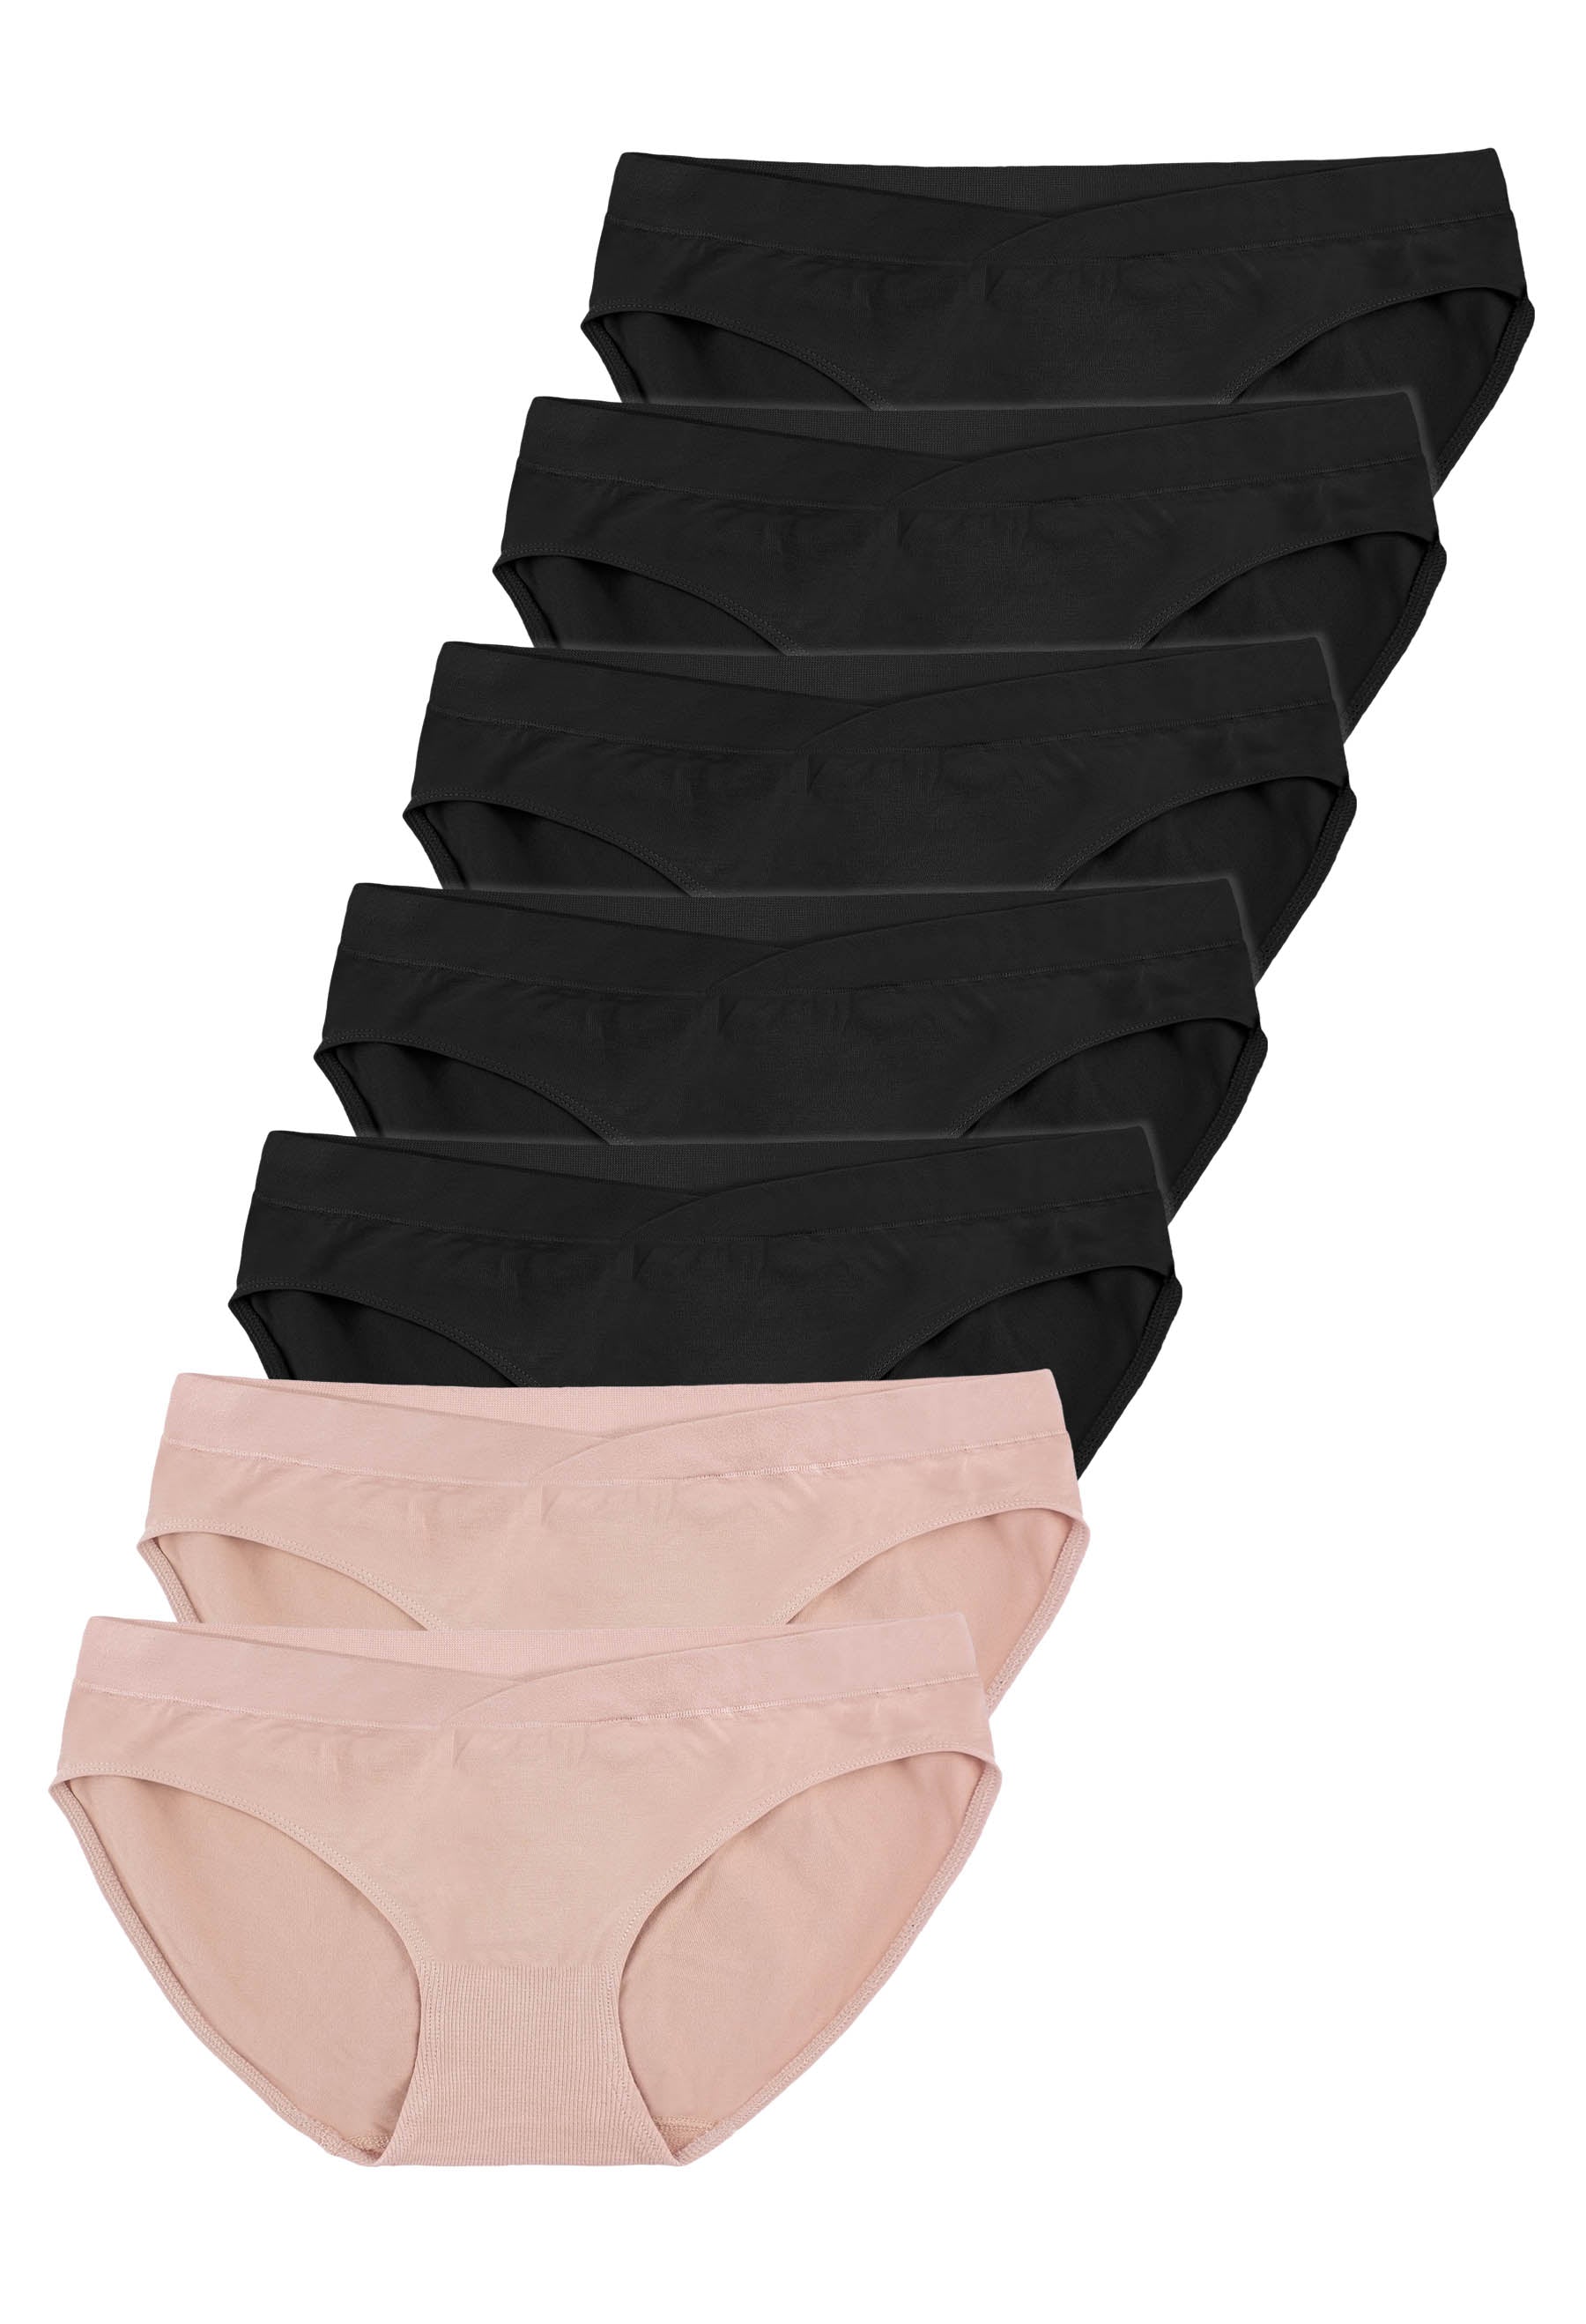 Seamless Soft & Stretchy Bamboo V Bikini - 7 Pack